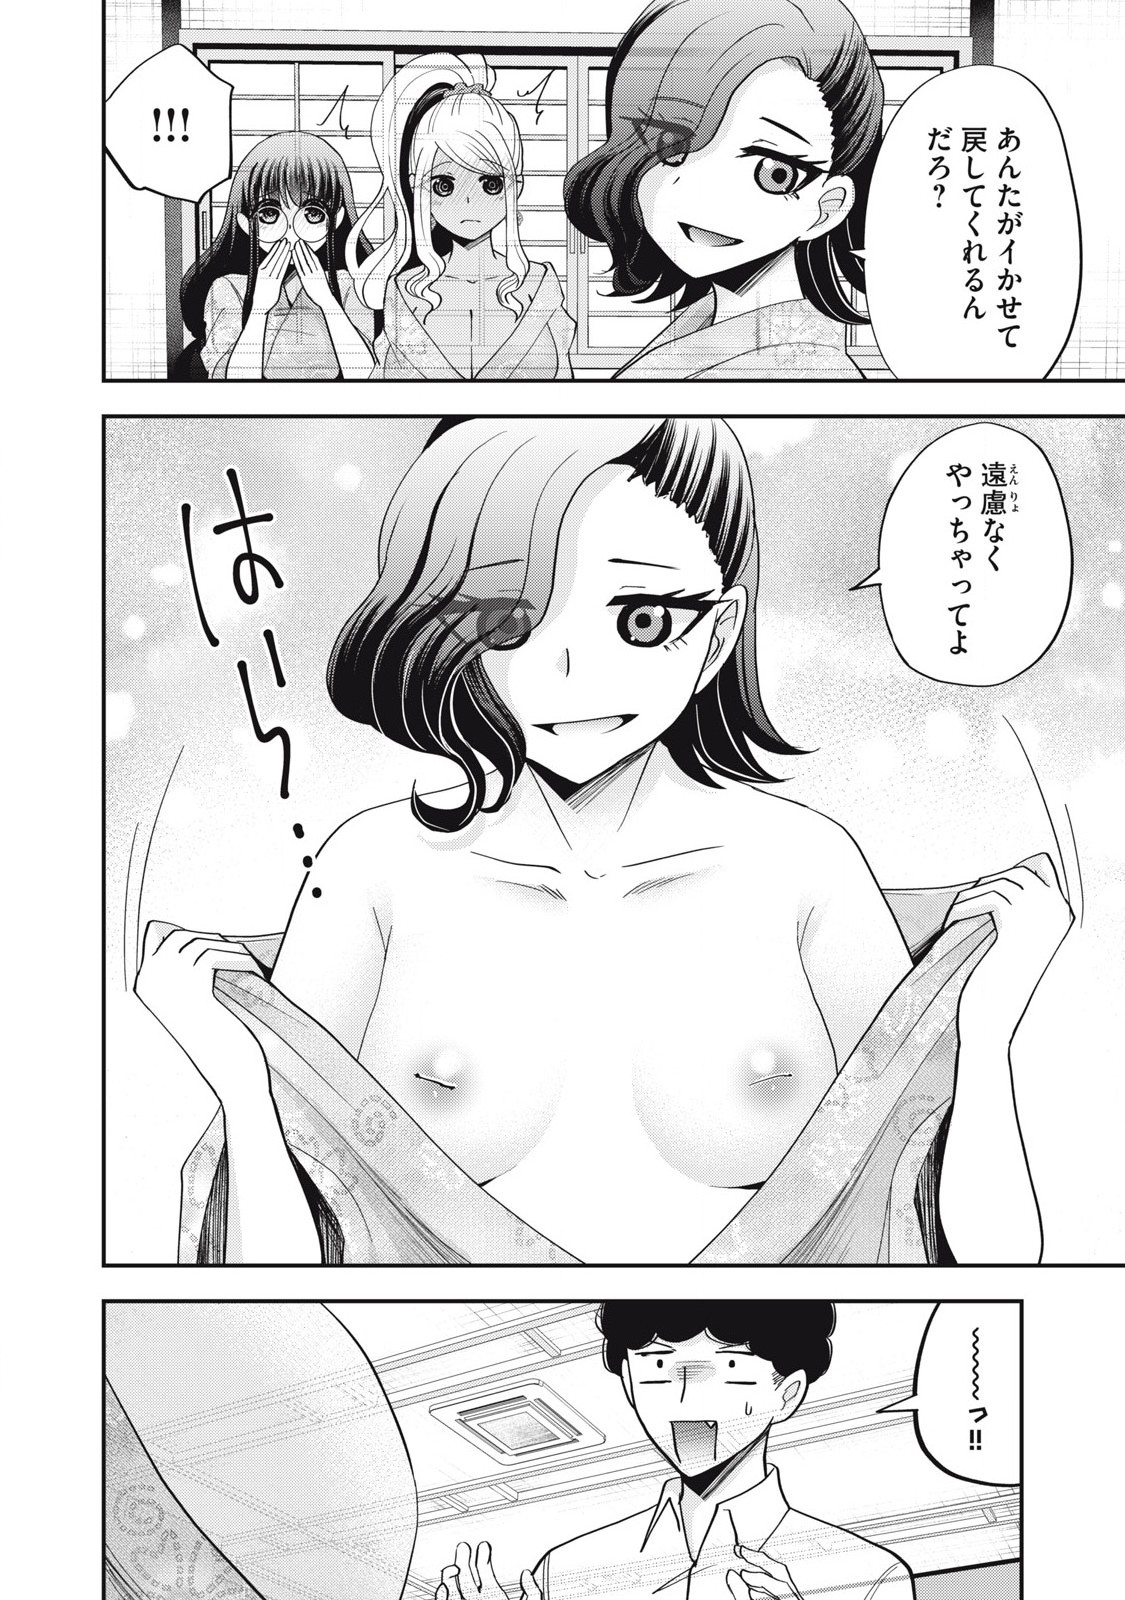 Yumeutsutsu no Hana no Sono - Chapter 29 - Page 8